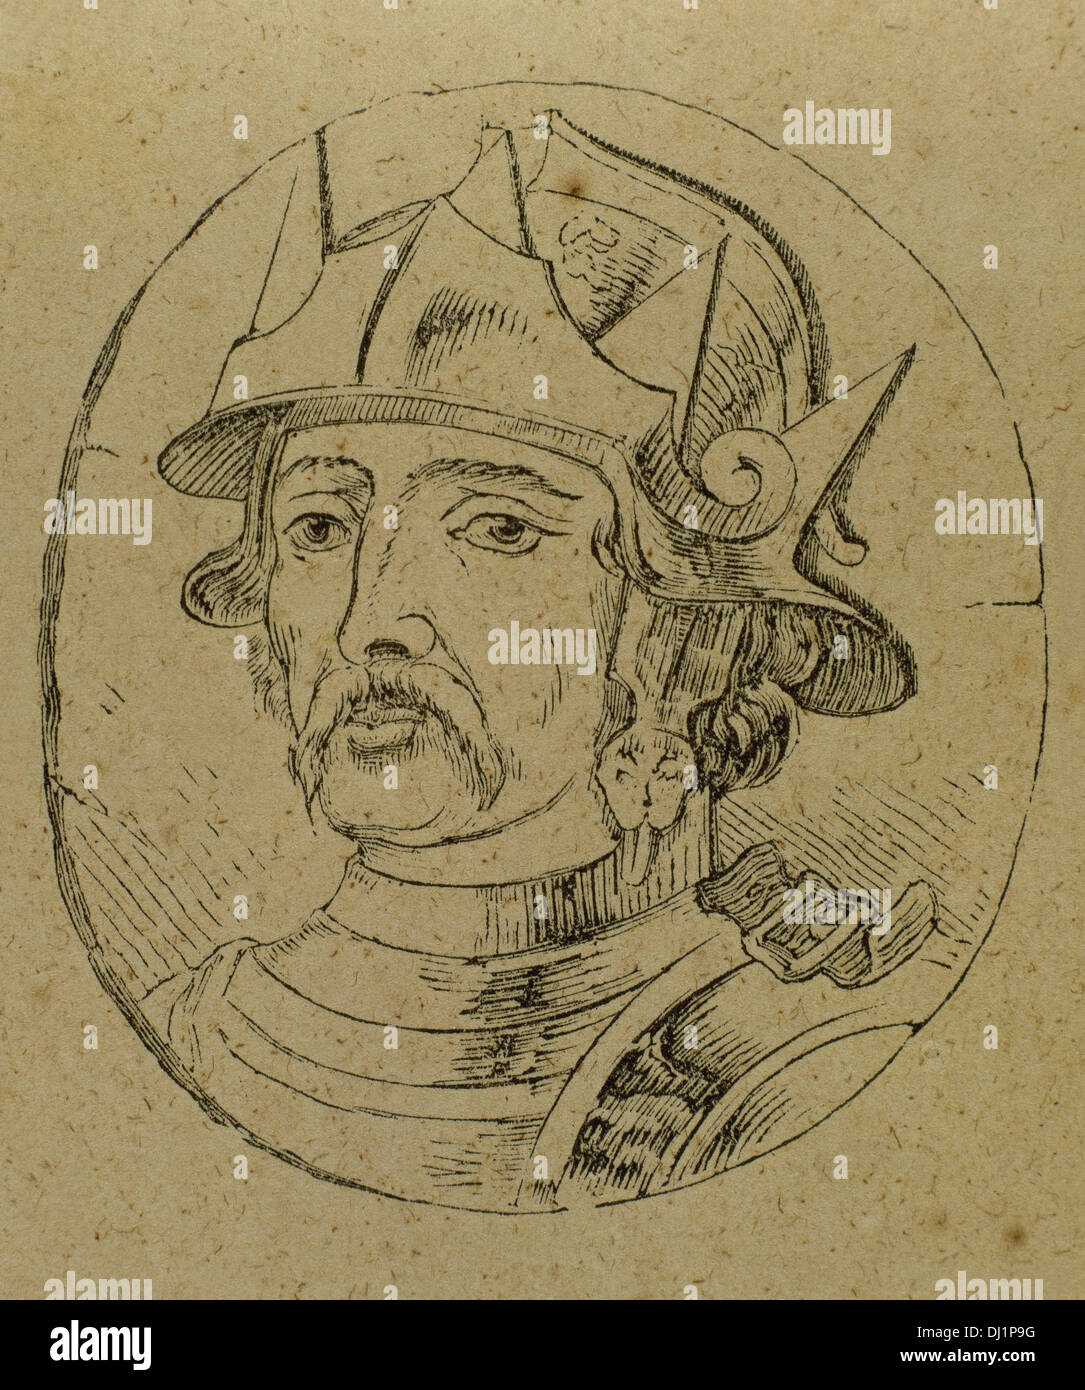 Ramiro II de Leon (900-951). Roi de Leon à partir de 931-951. La gravure. Banque D'Images